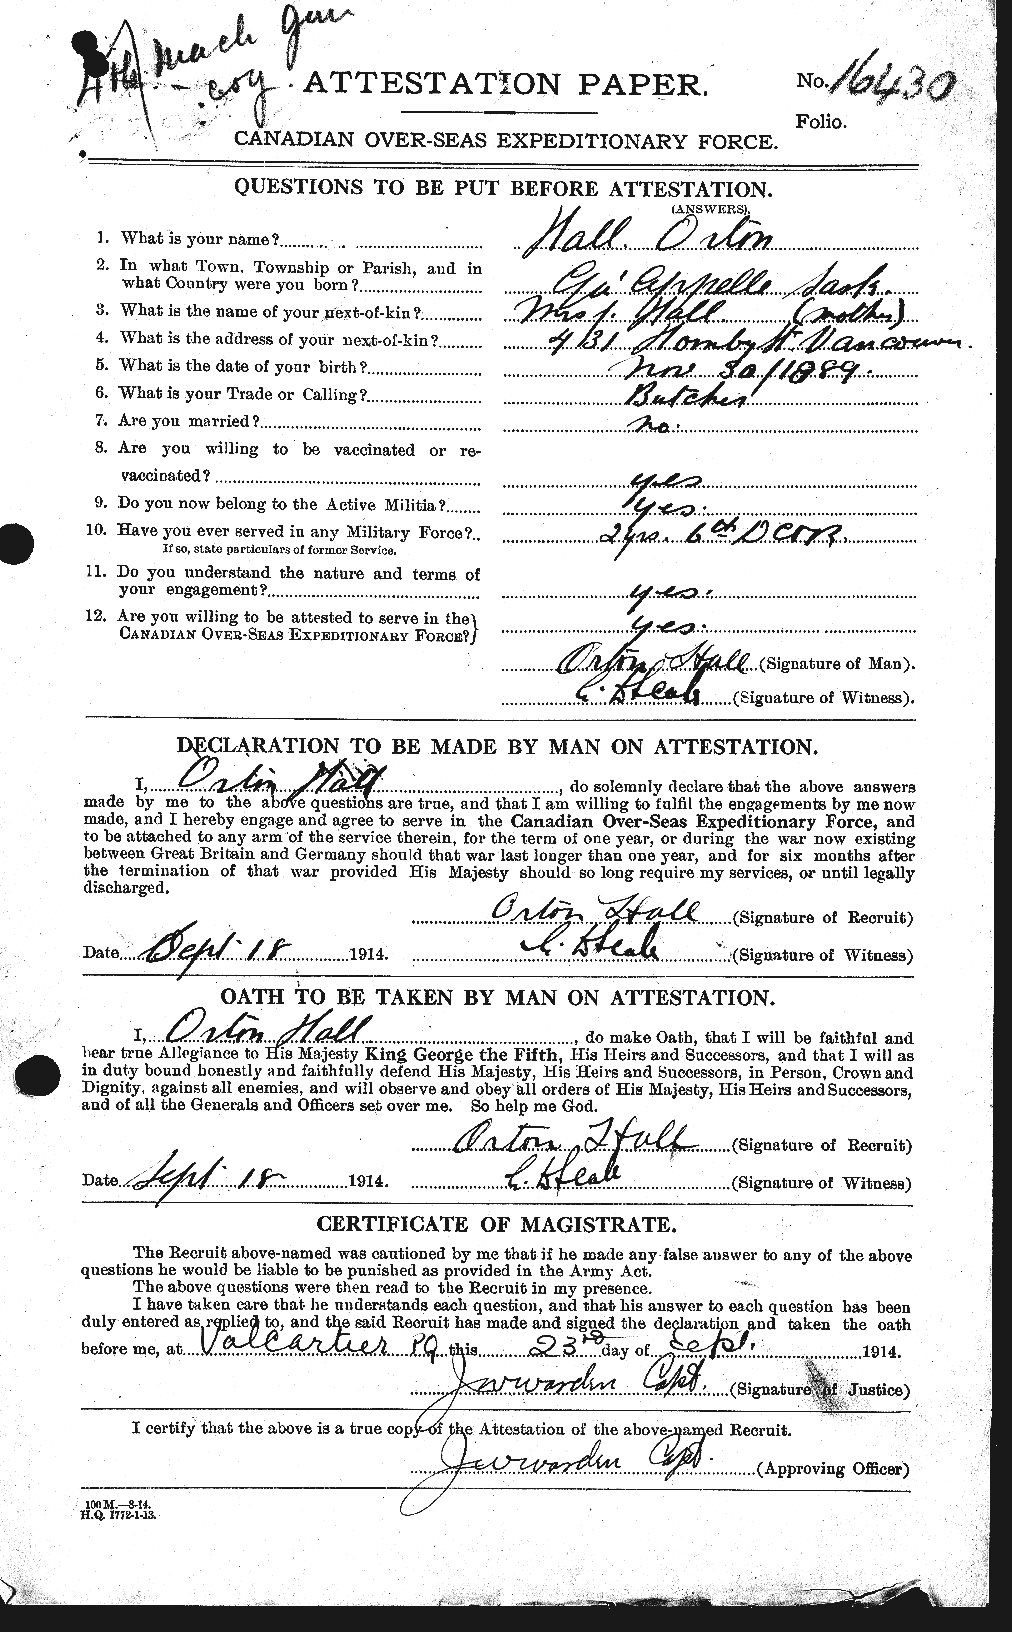 Dossiers du Personnel de la Première Guerre mondiale - CEC 369861a